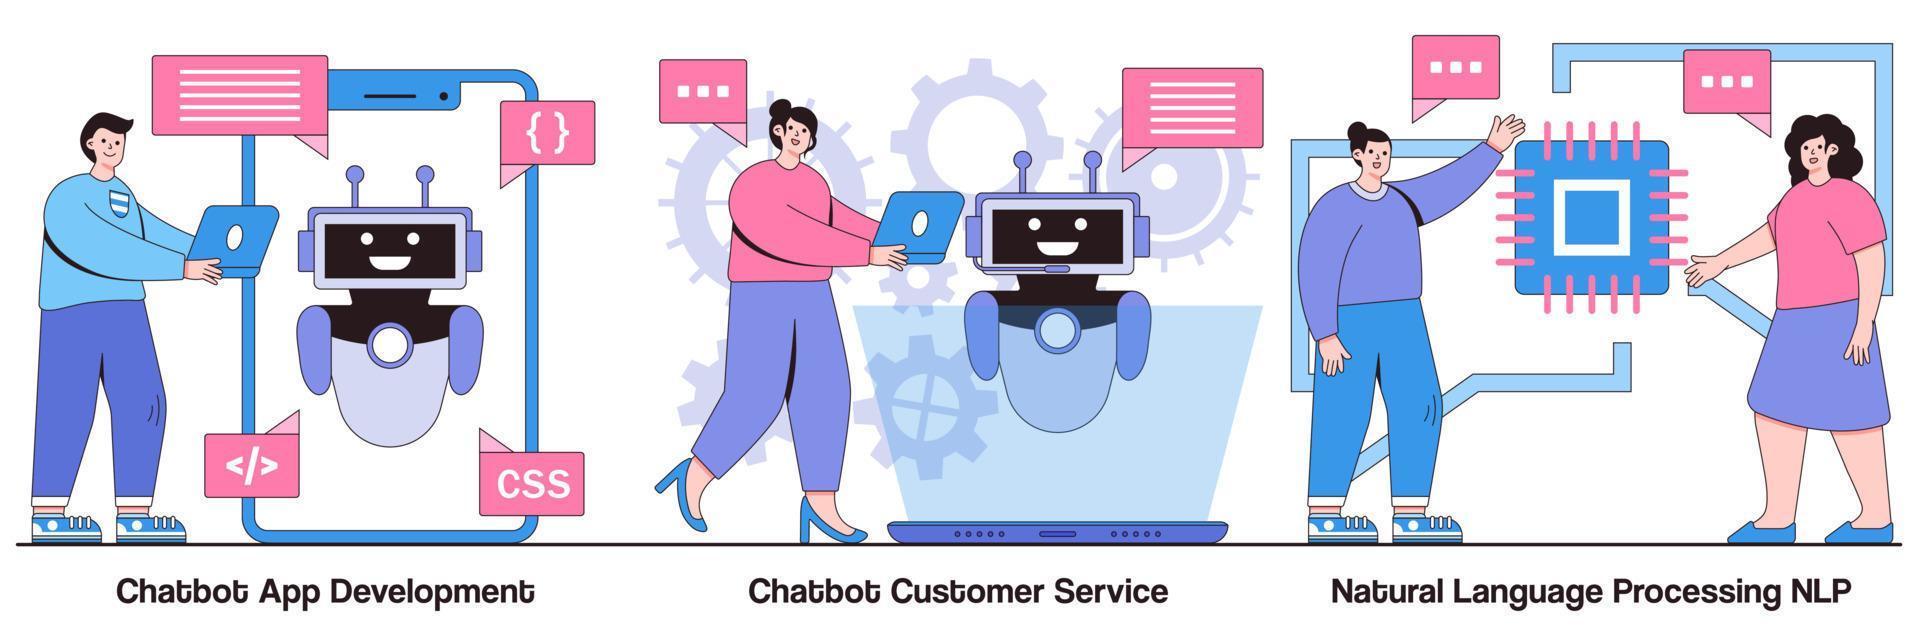 développement d'applications chatbot, service client et pack illustré de traitement du langage naturel vecteur